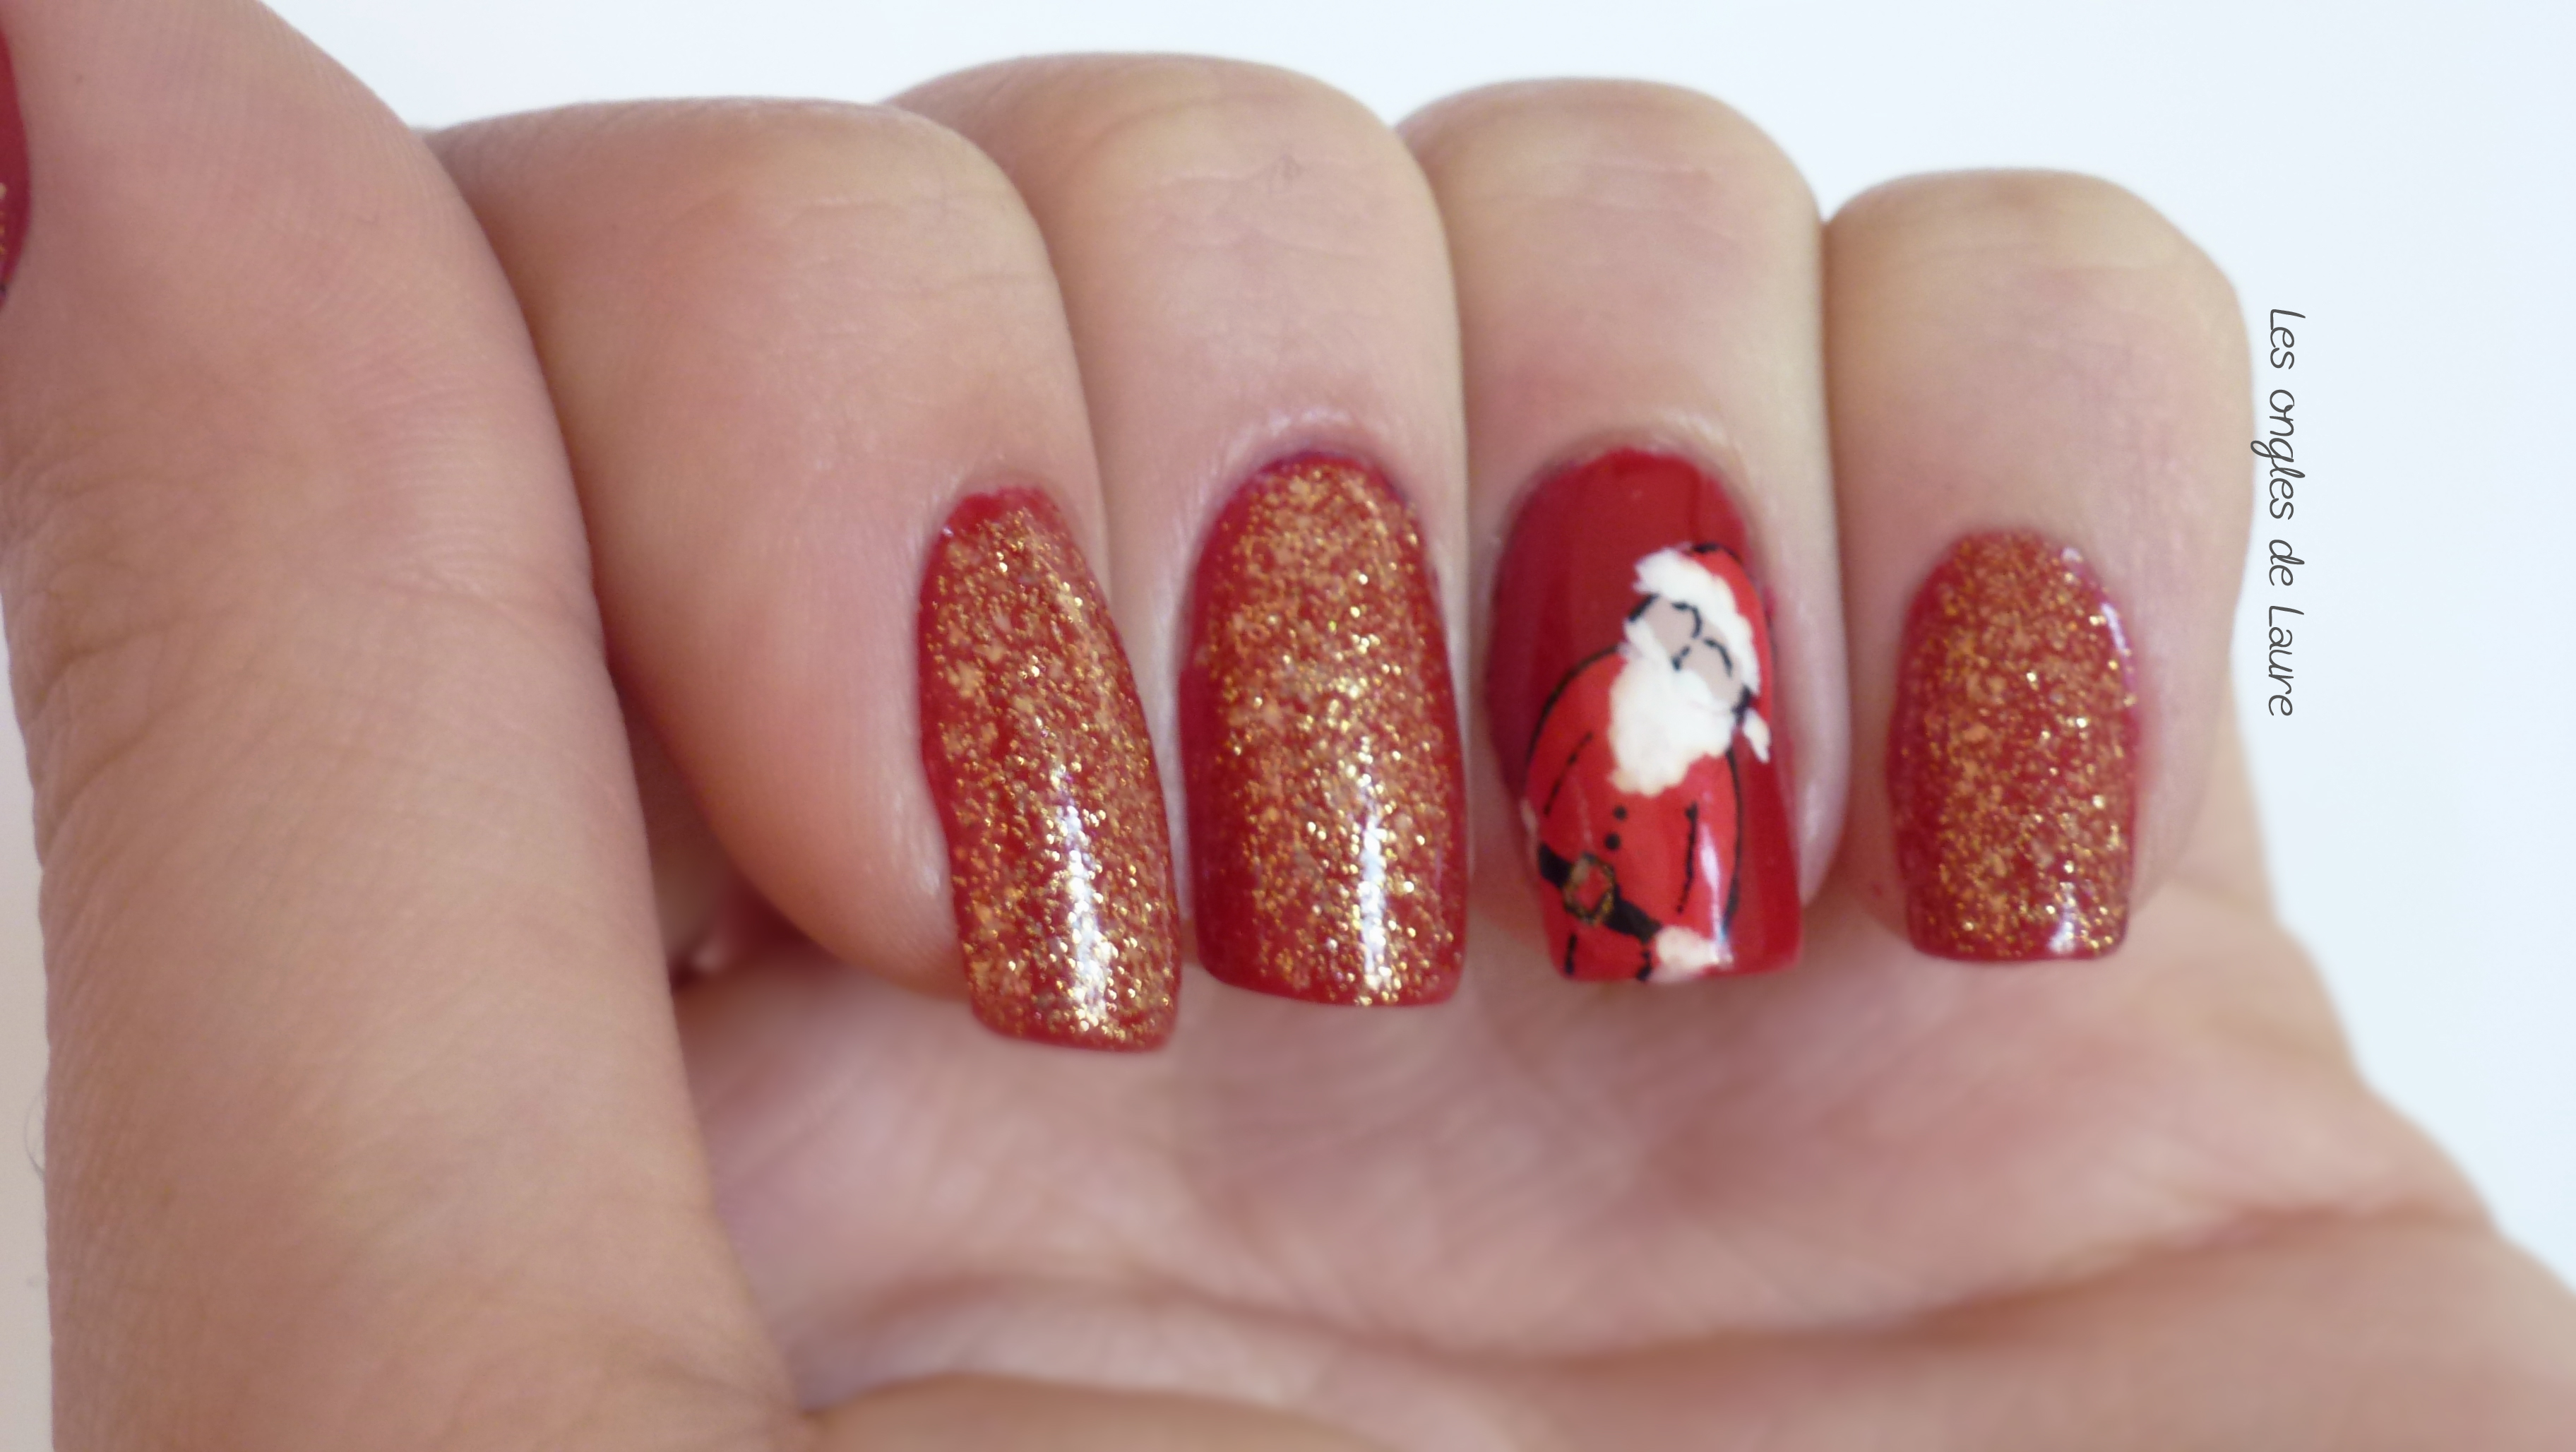 Rouge, Or et père Noël - Les ongles de Laure - Blog Nail Art